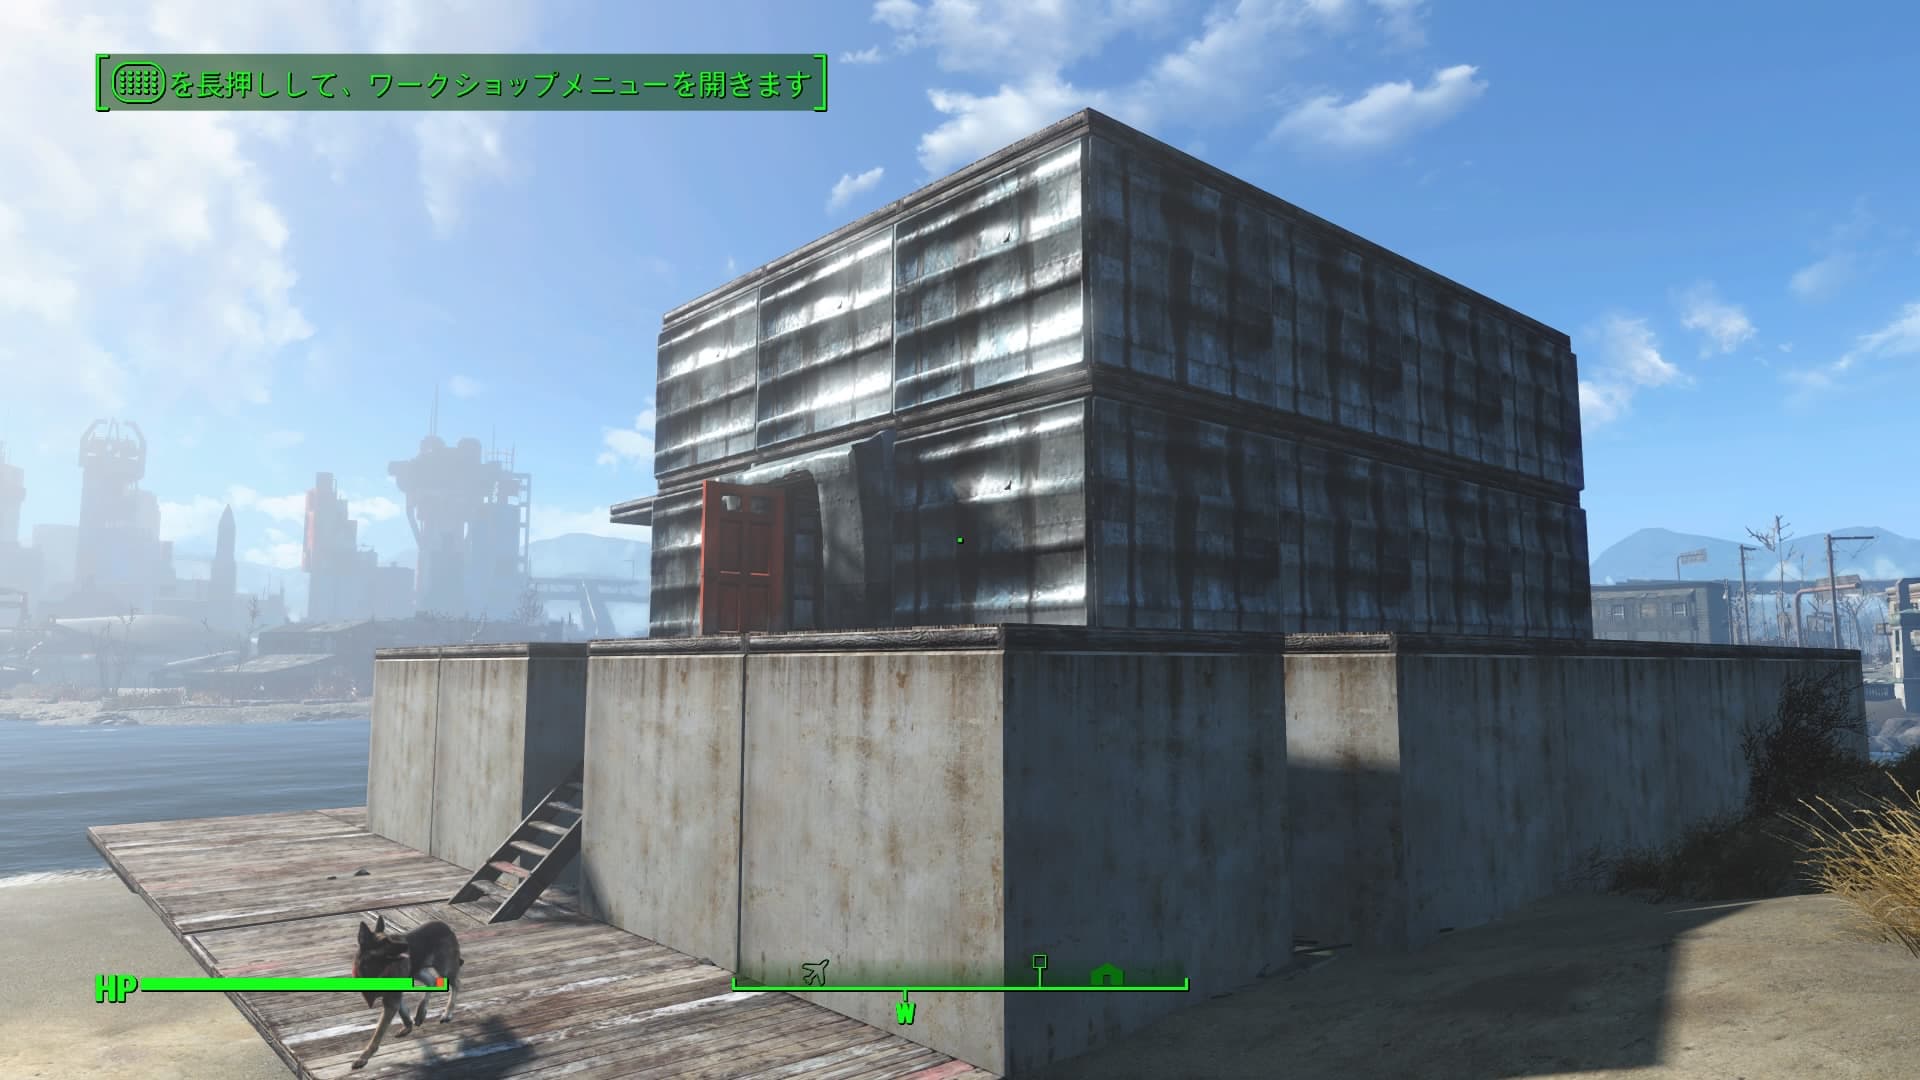 Fallout4 クラフト メインの家を作る 家具とエクステリアとライトを配置しました これで拠点の家が完成です あまげー